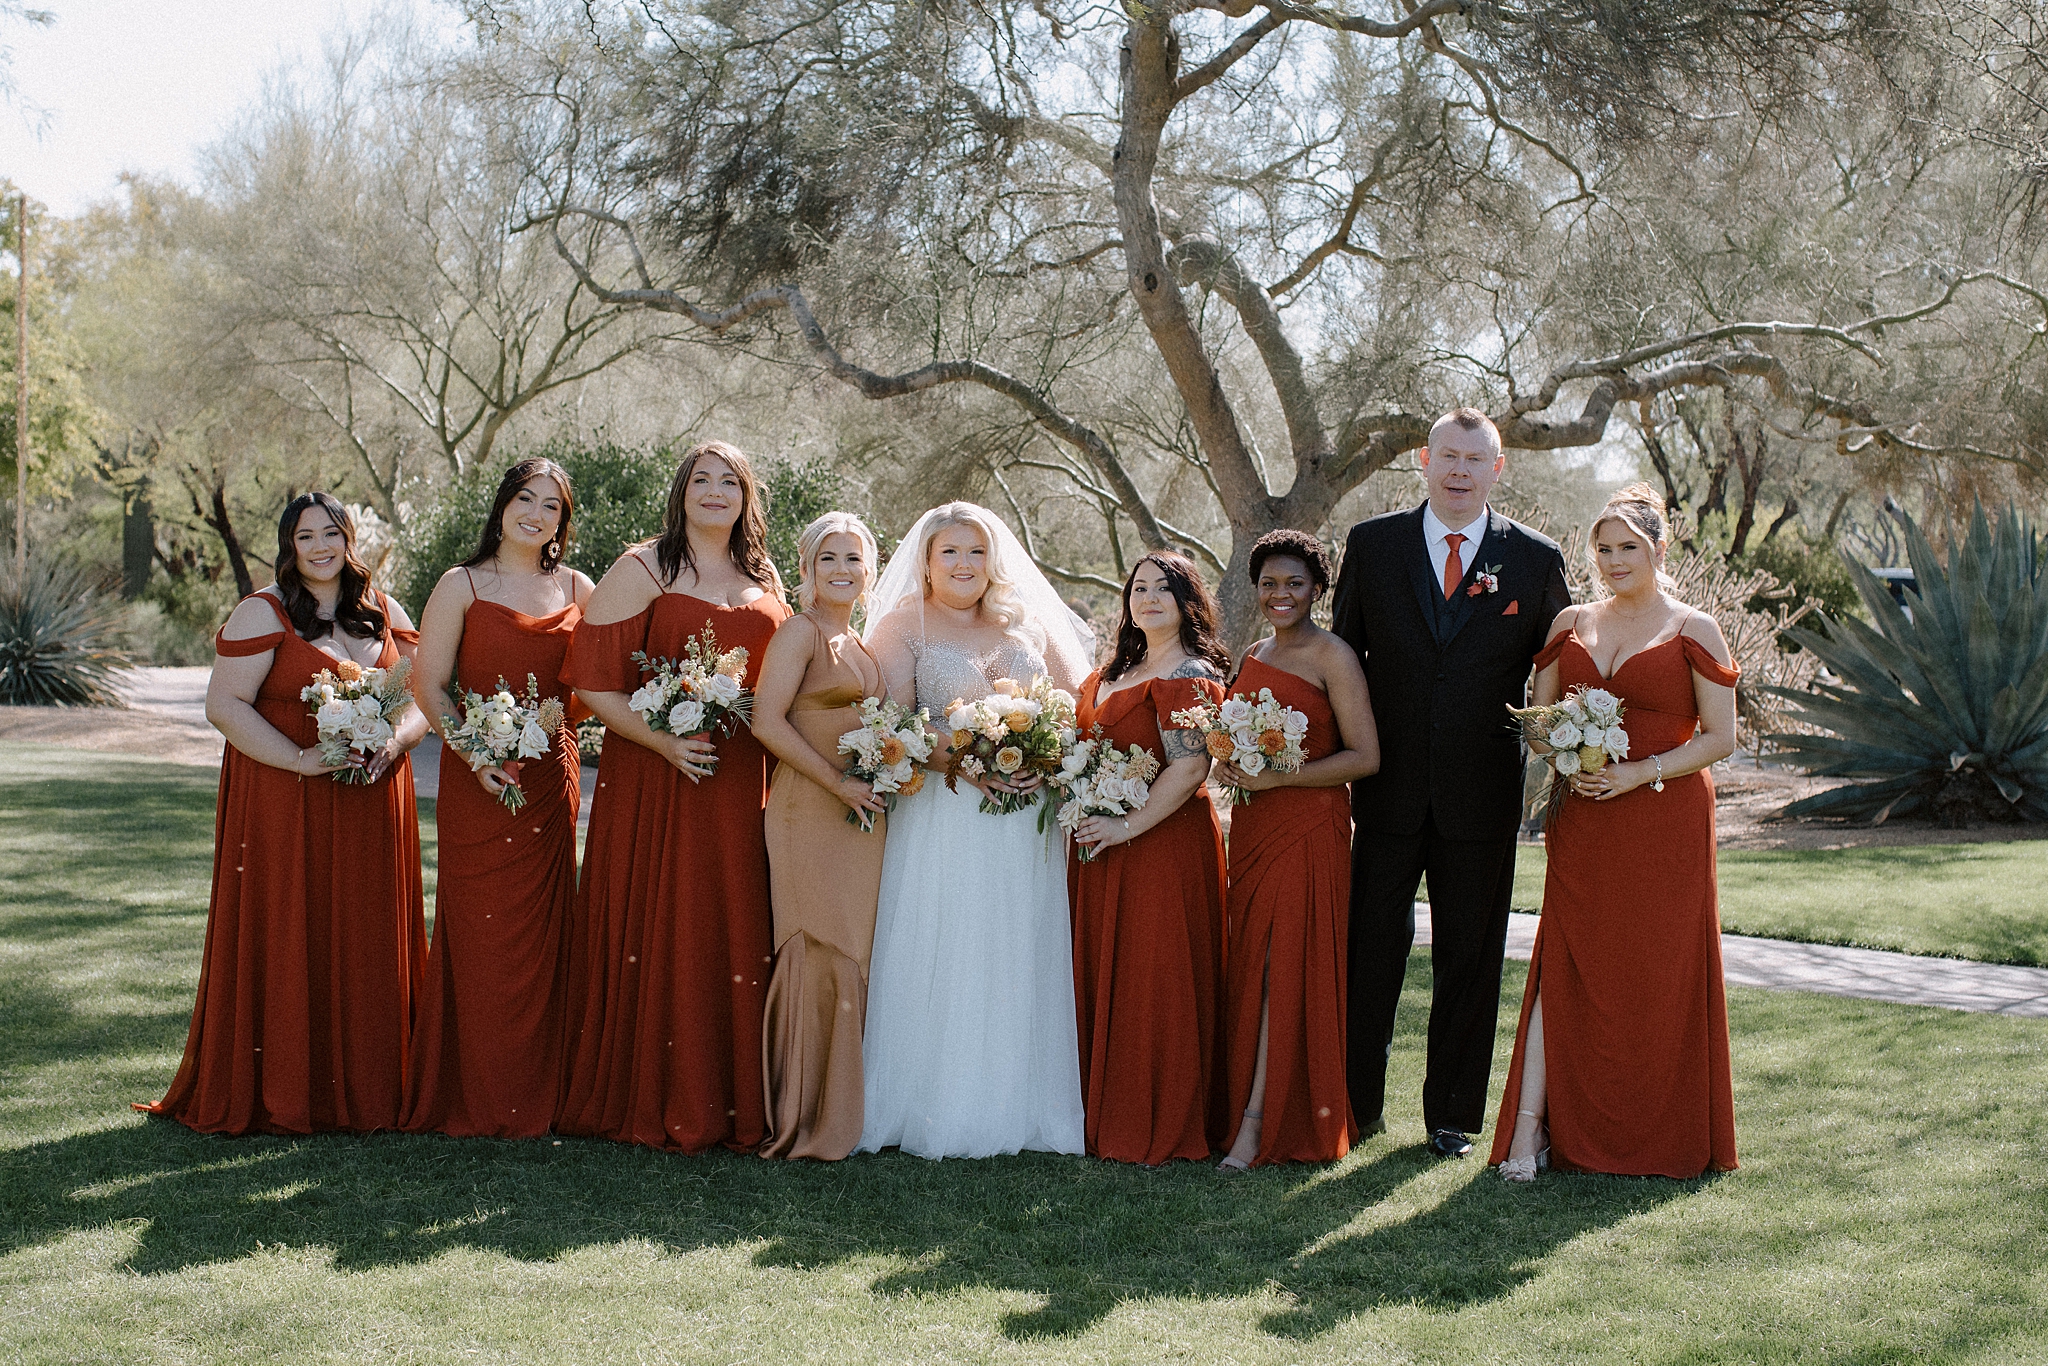 The Boulders Resort, The Boulders Resort Wedding, Phoenix Wedding Photographer, Phoenix Bride, Wedding Bouquet, Wedding Party